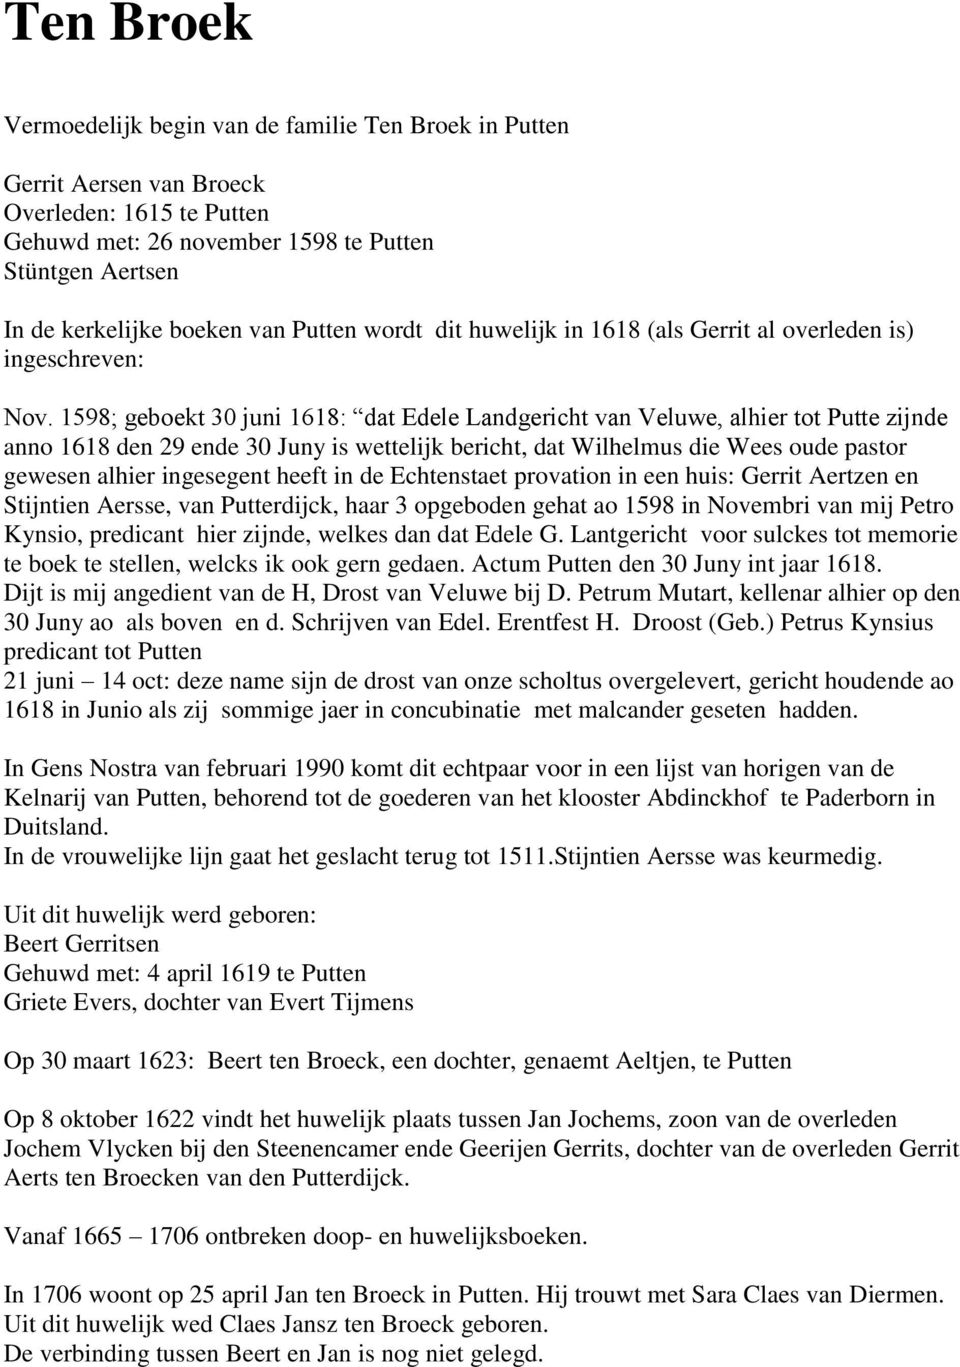 1598; geboekt 30 juni 1618: dat Edele Landgericht van Veluwe, alhier tot Putte zijnde anno 1618 den 29 ende 30 Juny is wettelijk bericht, dat Wilhelmus die Wees oude pastor gewesen alhier ingesegent